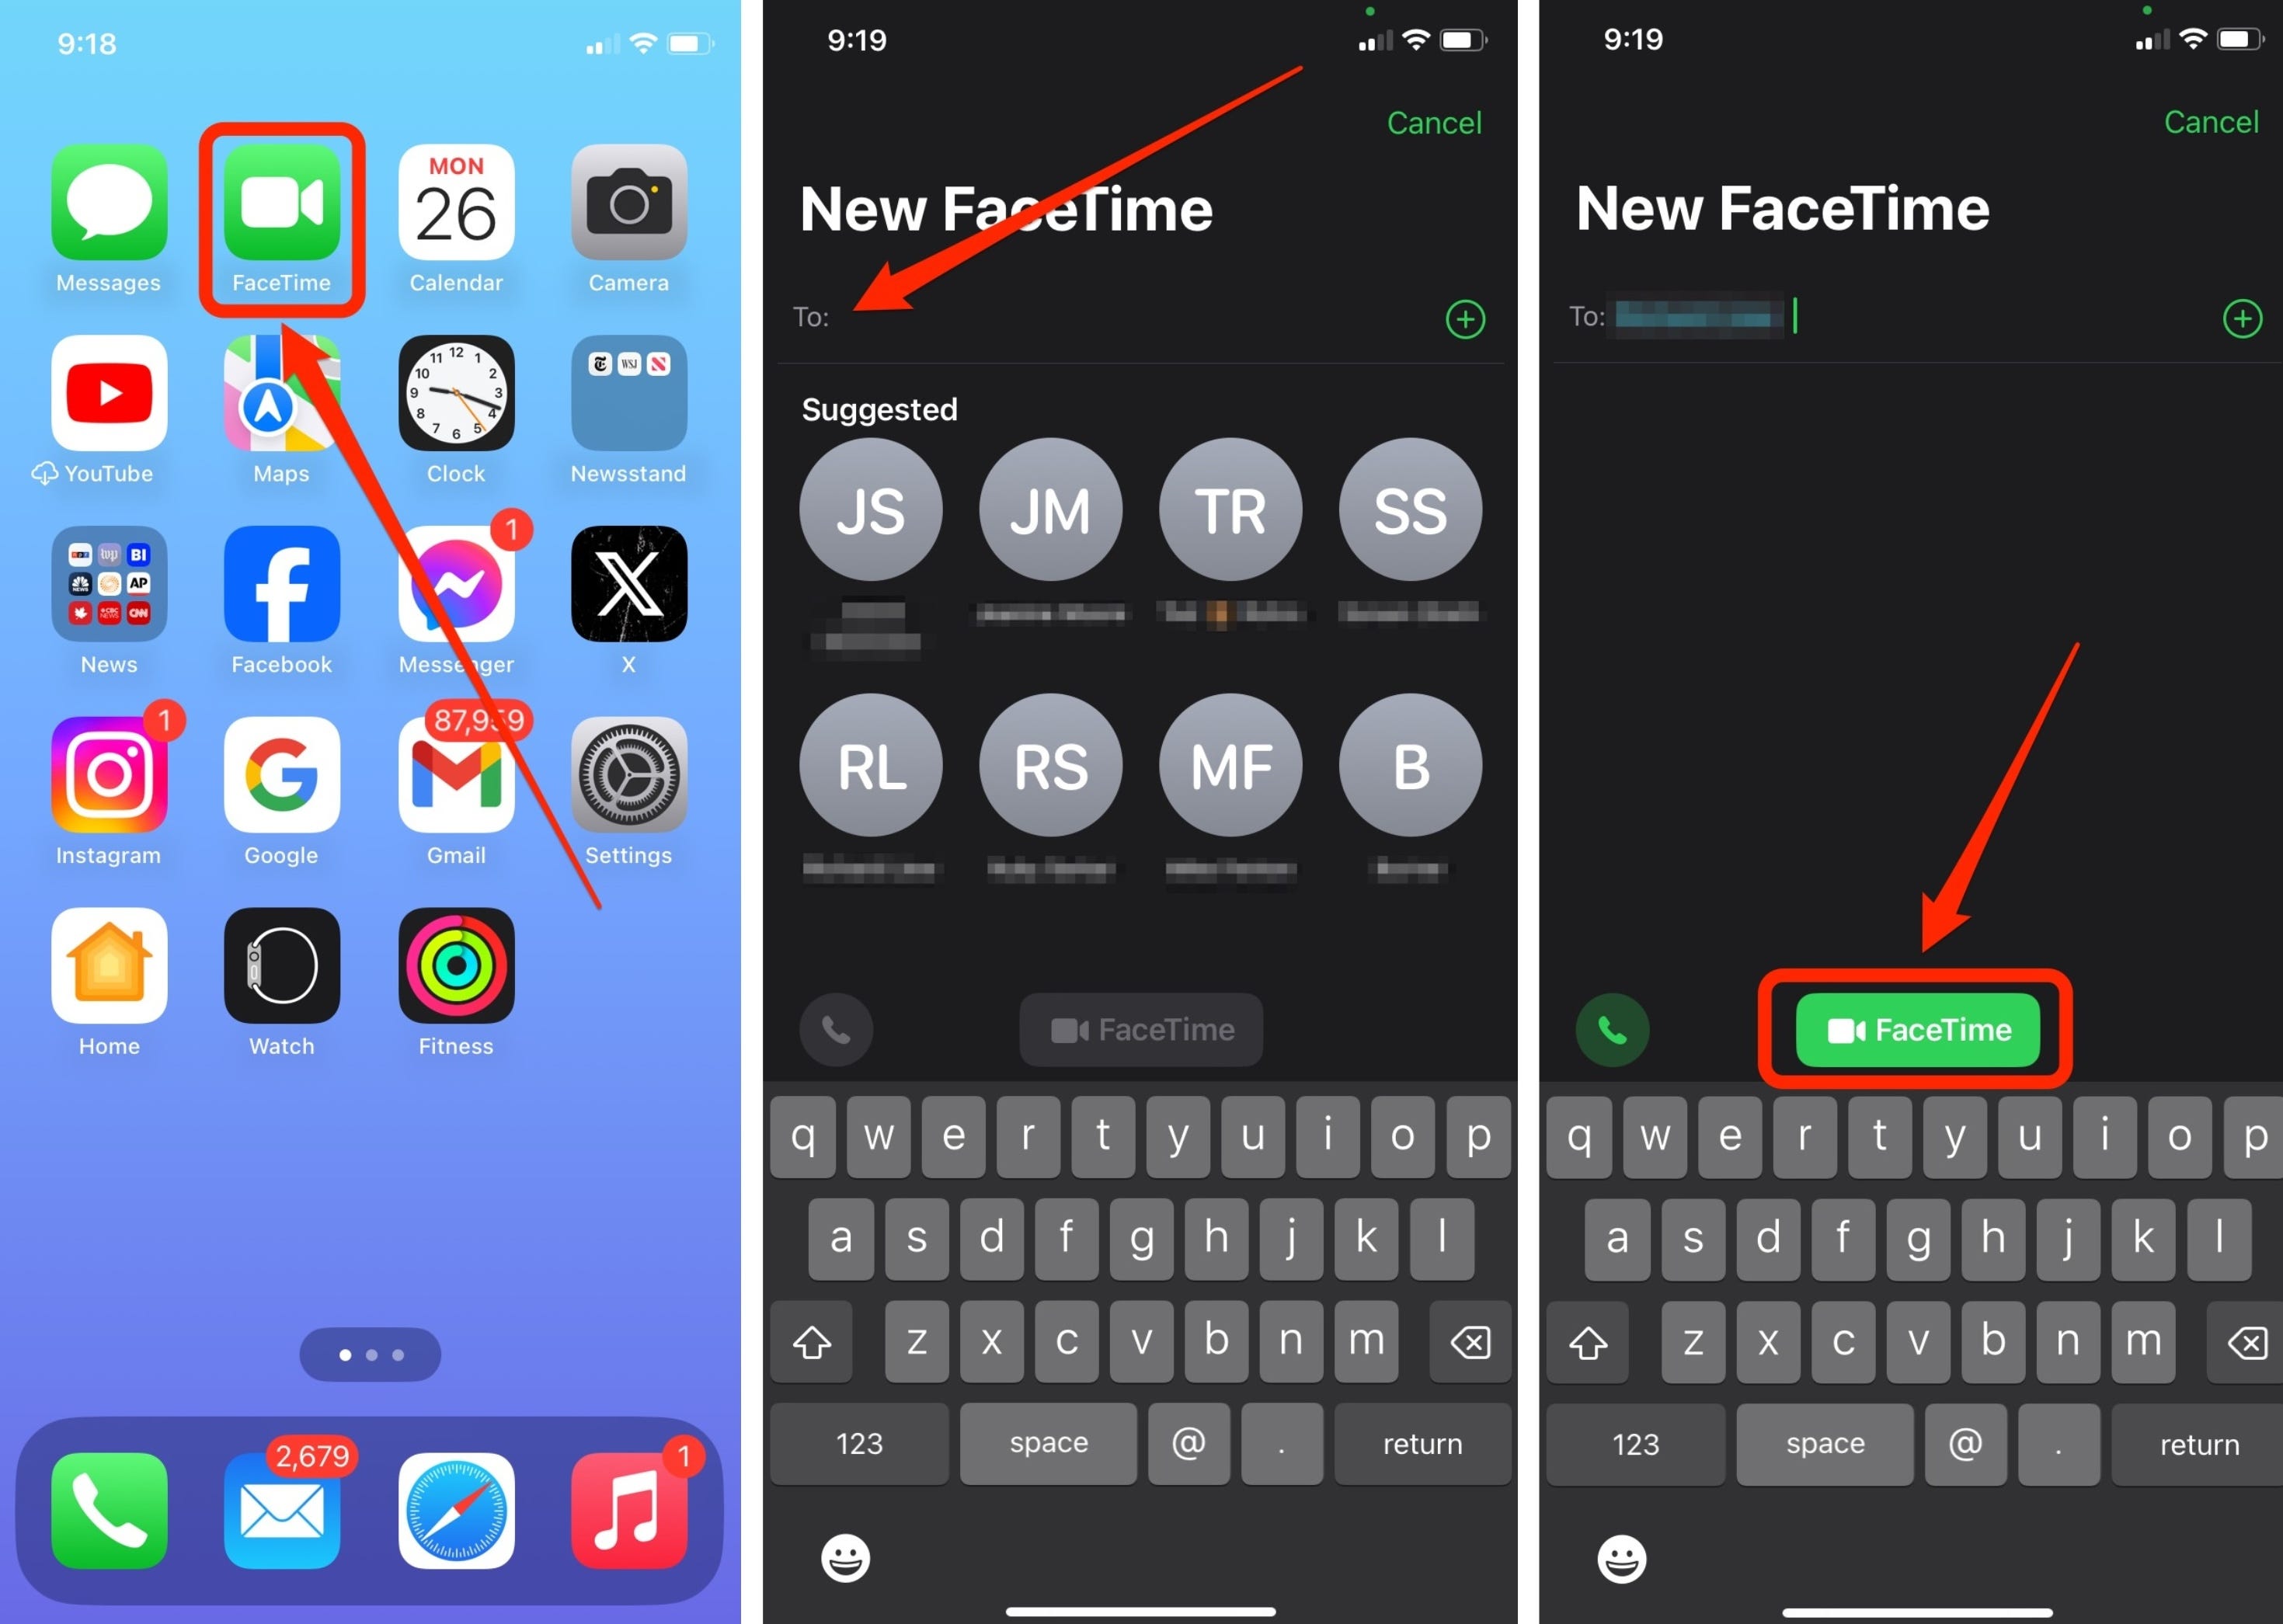 Eine Reihe von Screenshots zeigt drei Schritte zum Starten eines neuen FaceTime-Anrufs von einem iPhone: Starten der FaceTime-App, Auswählen eines Kontakts und Tippen auf die Schaltfläche „FaceTime“, um einen Anruf zu starten.